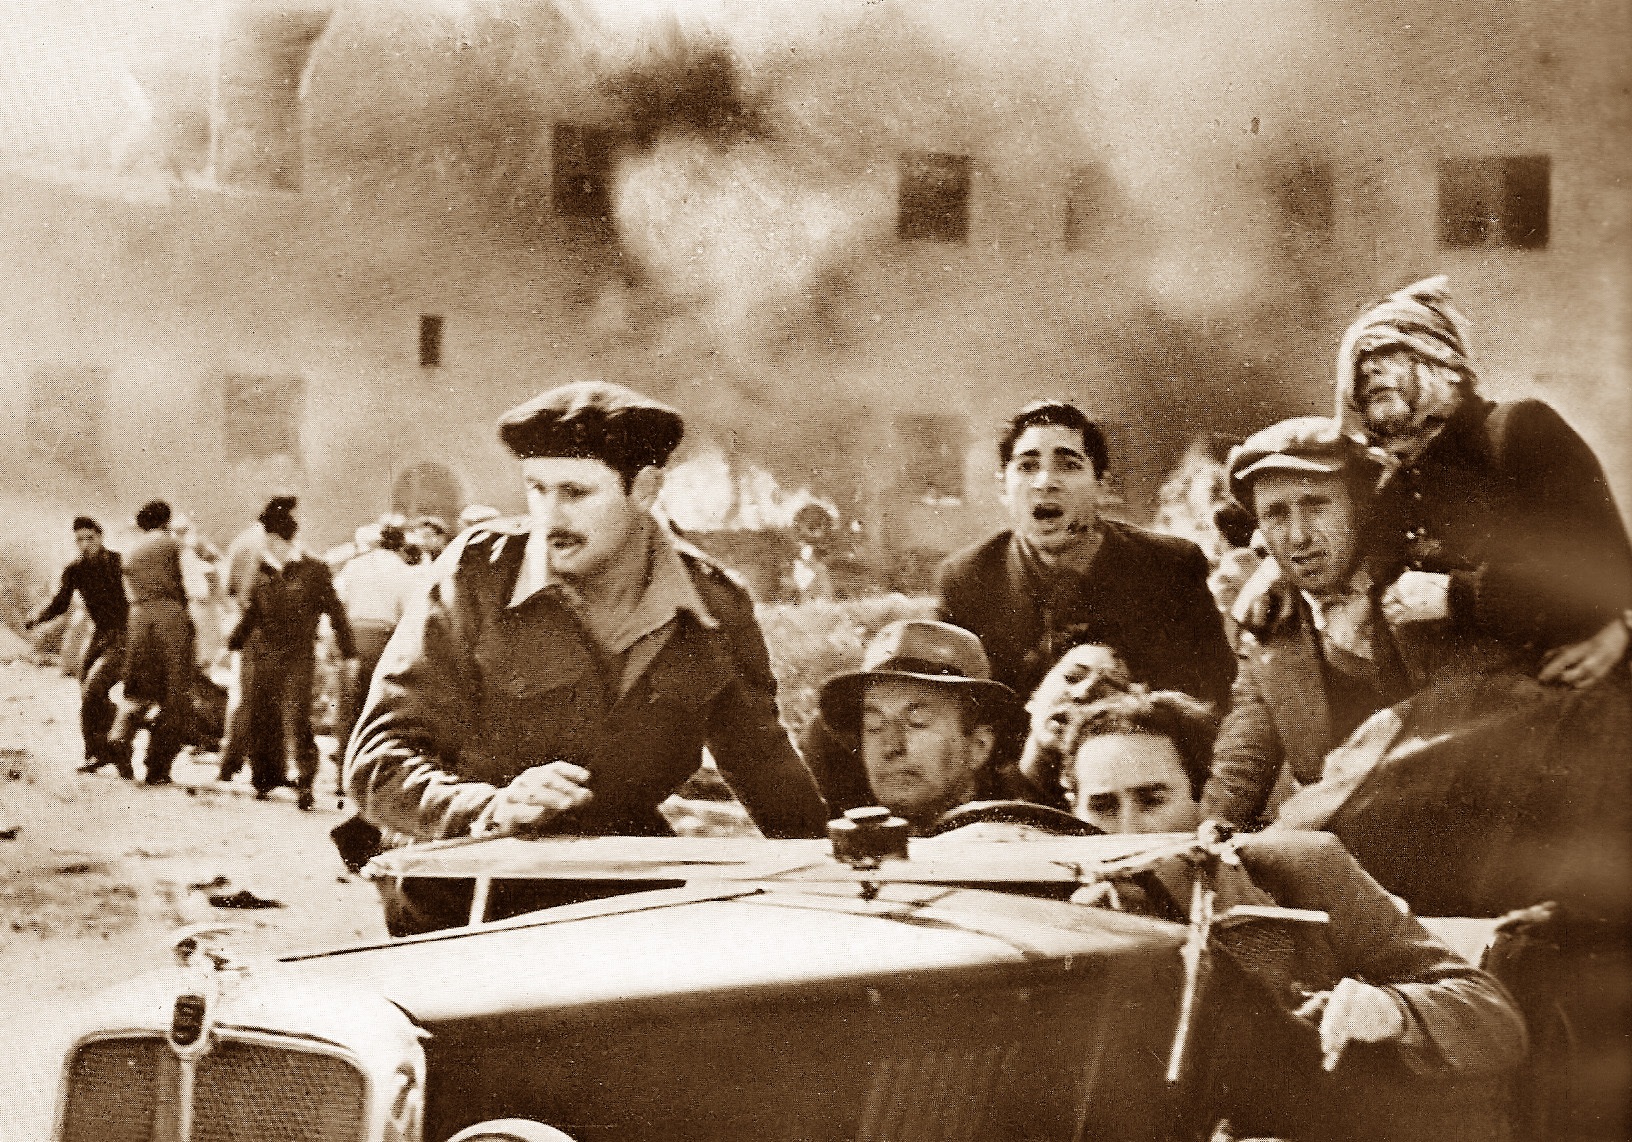 השבוע לפני 70 שנה: מכונית תופת בבניין הסוכנות היהודית, "פצצת האטום" הישראלית ותינוק בהתעמלות בוקר